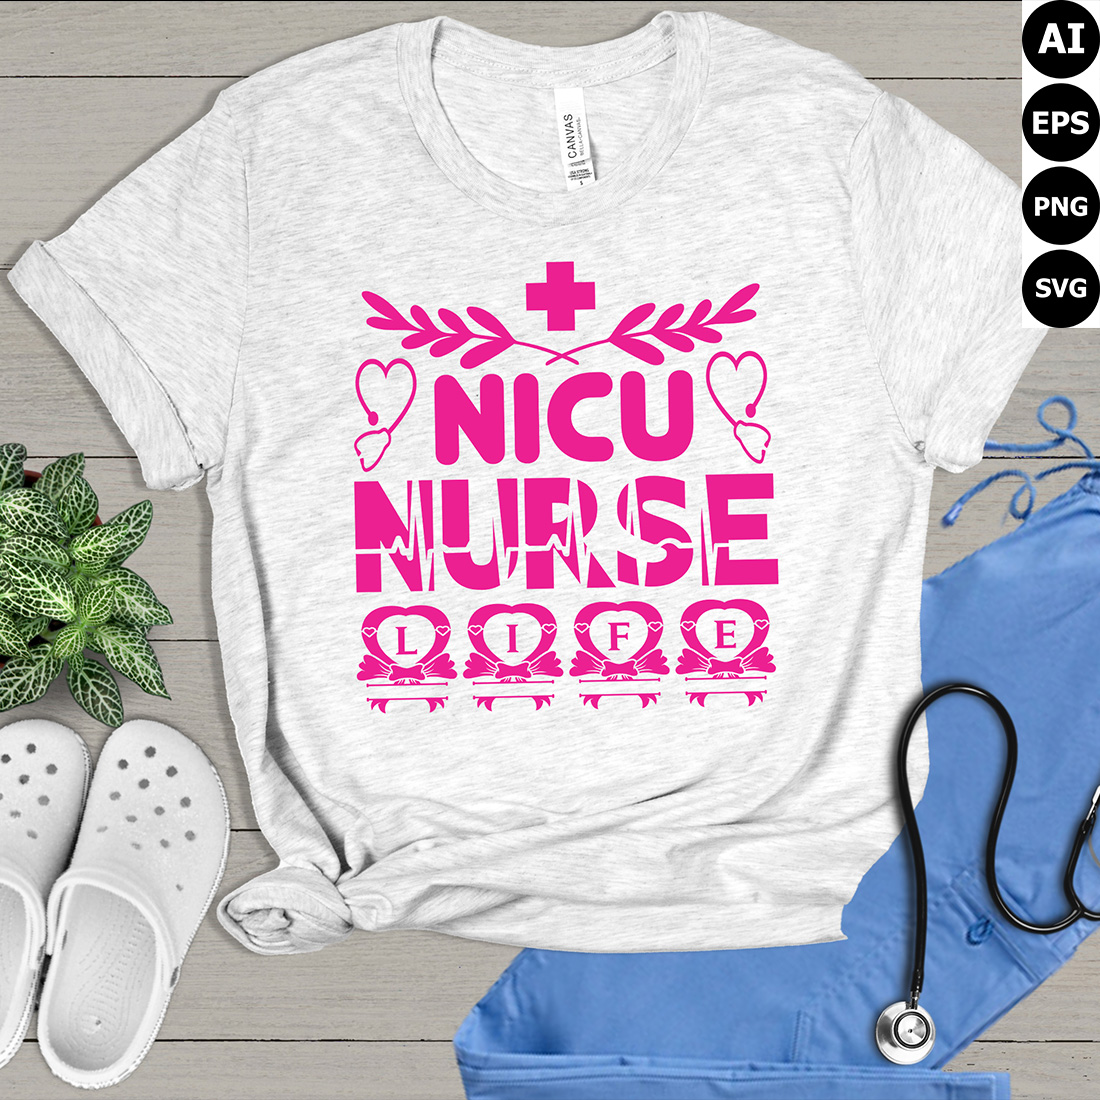 NICU Nurse Life T-shirt design preview image.